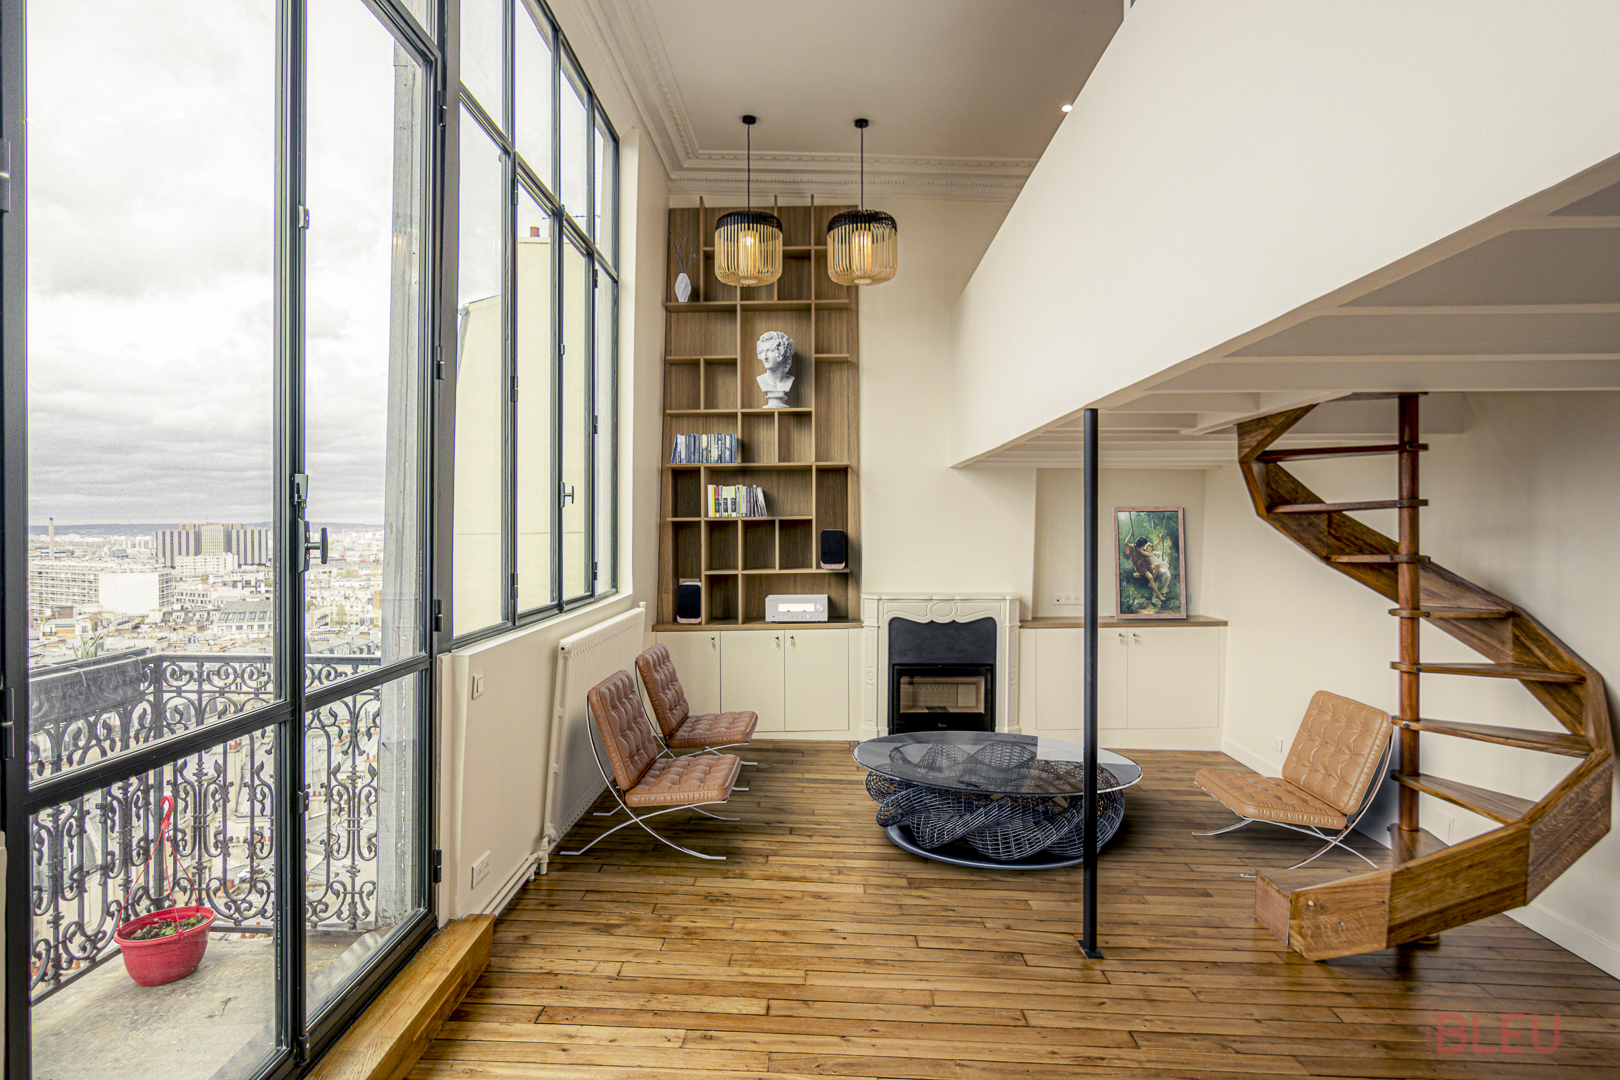 Salon lumineux avec fenêtres panoramiques à Paris, conçu par un cabinet architecture Paris, montrant un projet de rénovation loft élégant avec éléments modernes et classiques.